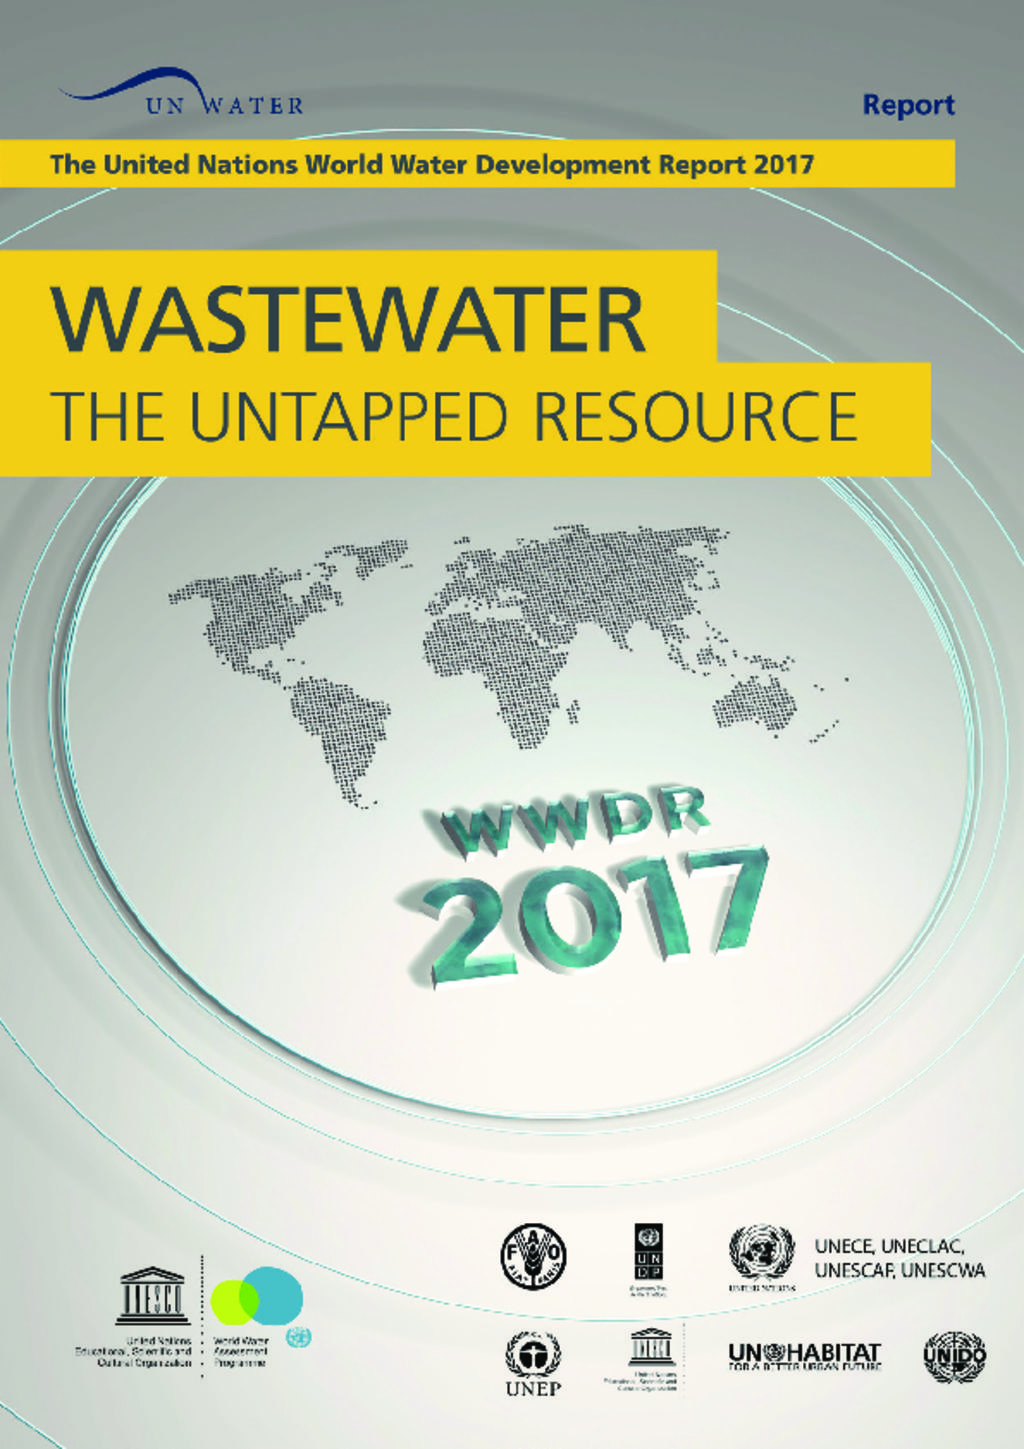 UNESCO waste water report 2017